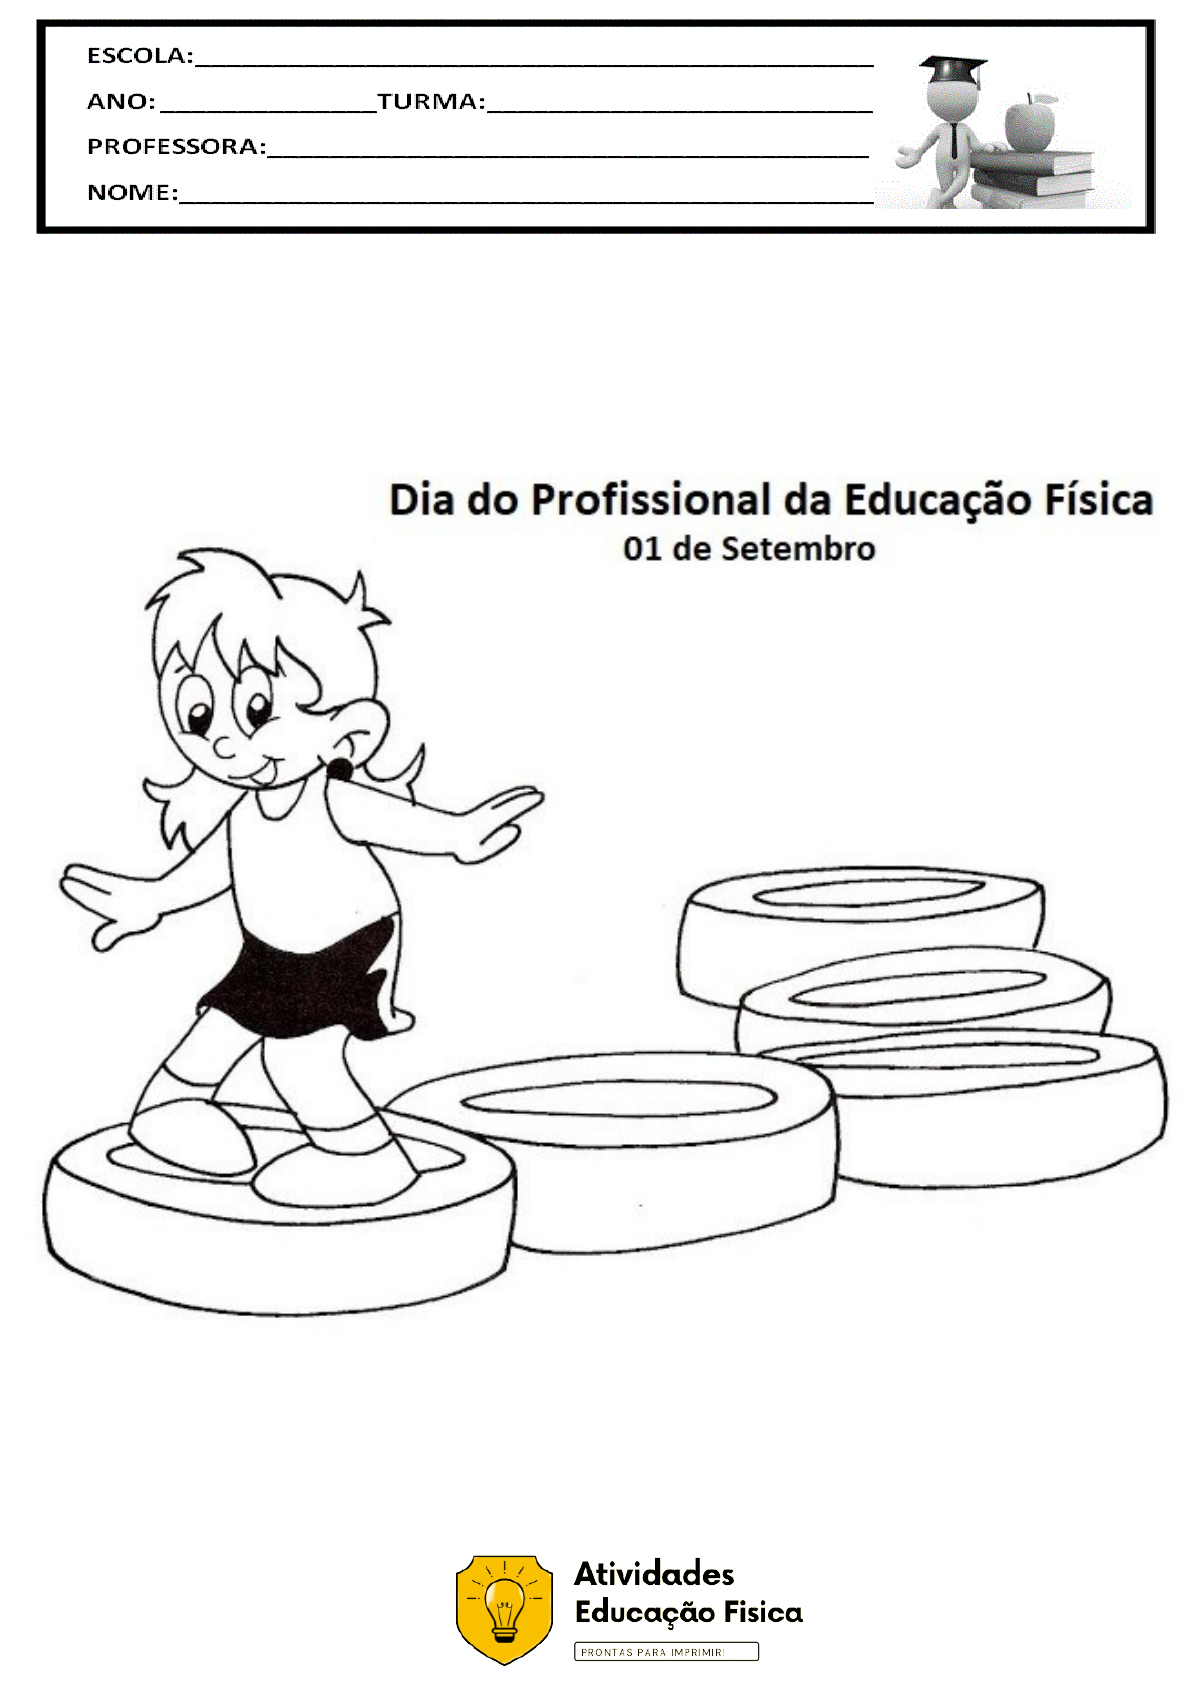 Atividades Escolares: EDUCAÇÃO FISICA - jogo da velha  Educação fisica,  Desenhos de educação fisica, Atividades de educação física